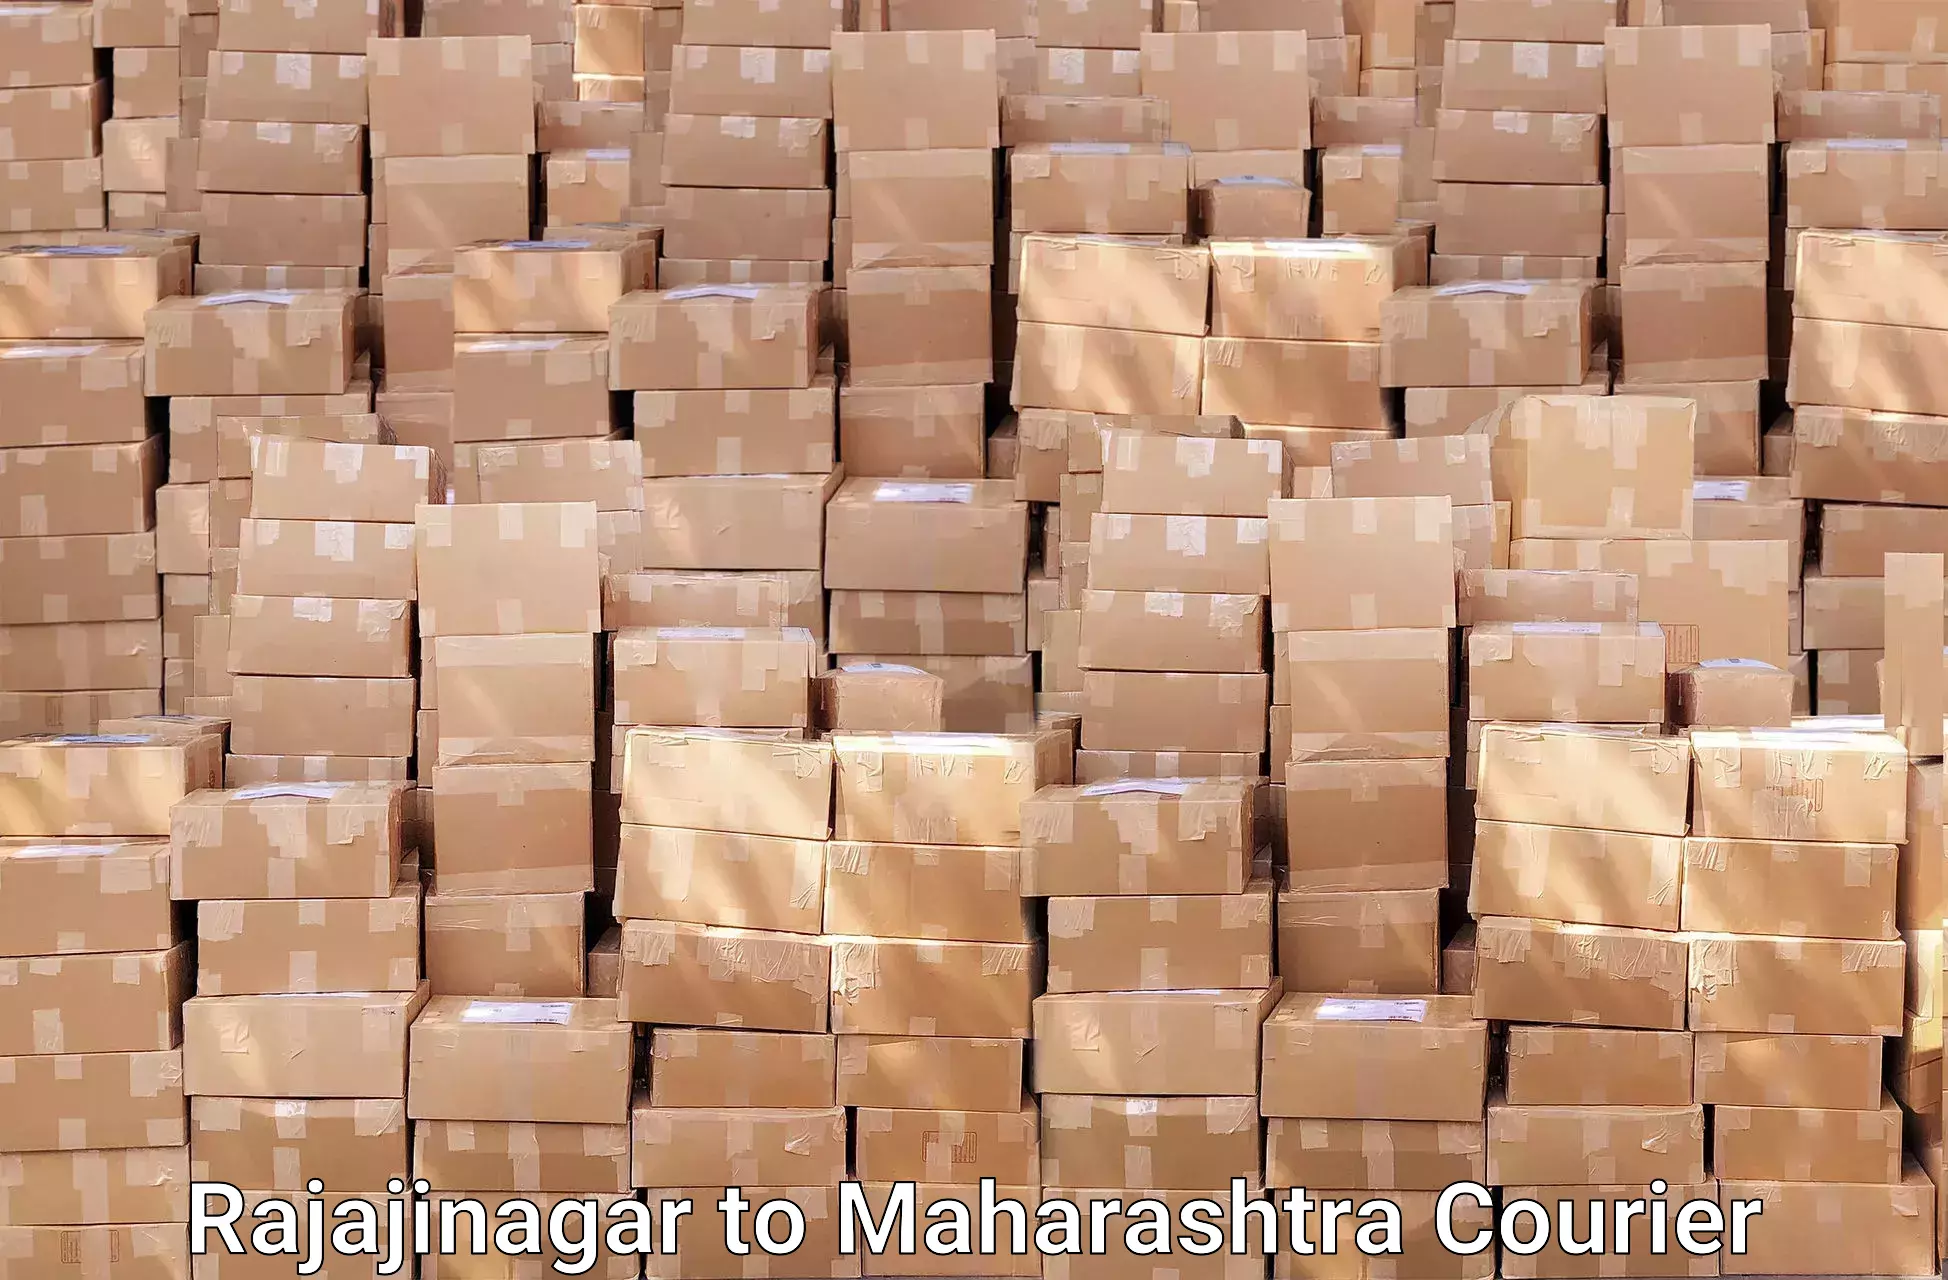 Moving and handling services Rajajinagar to Maharashtra